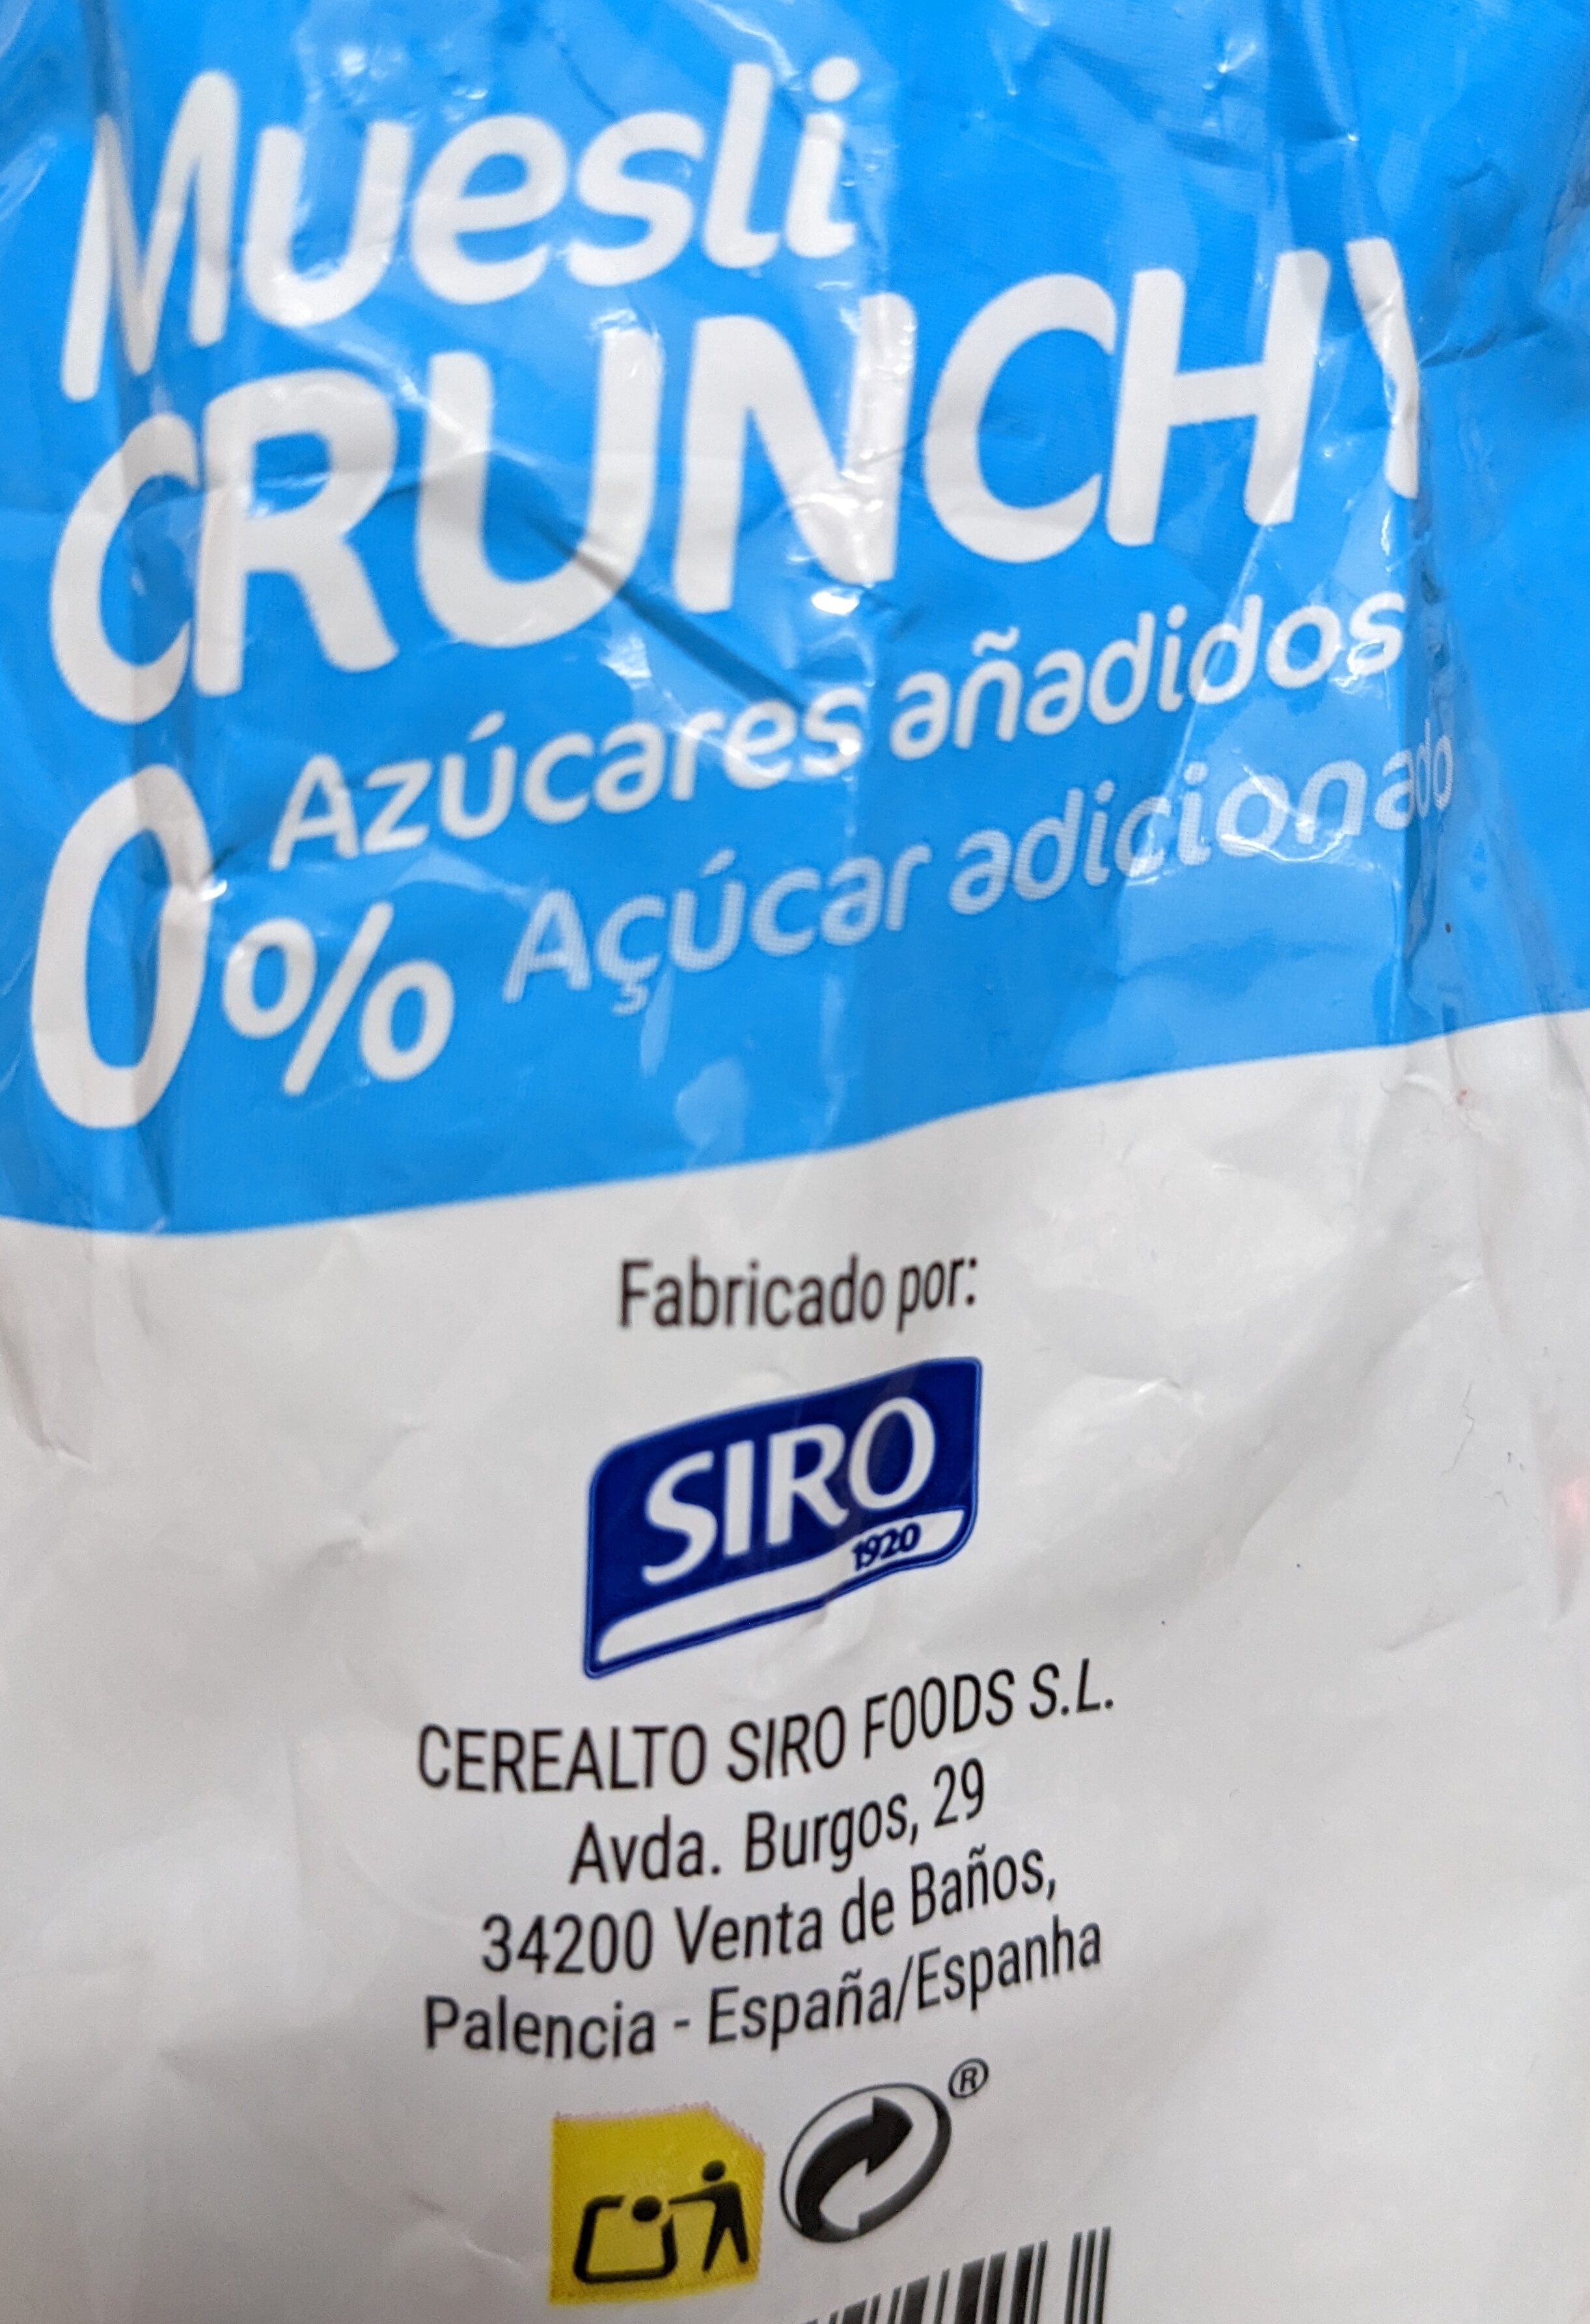 Muesli crunchy sin azúcares añadidos - Instrucciones de reciclaje y/o información de embalaje